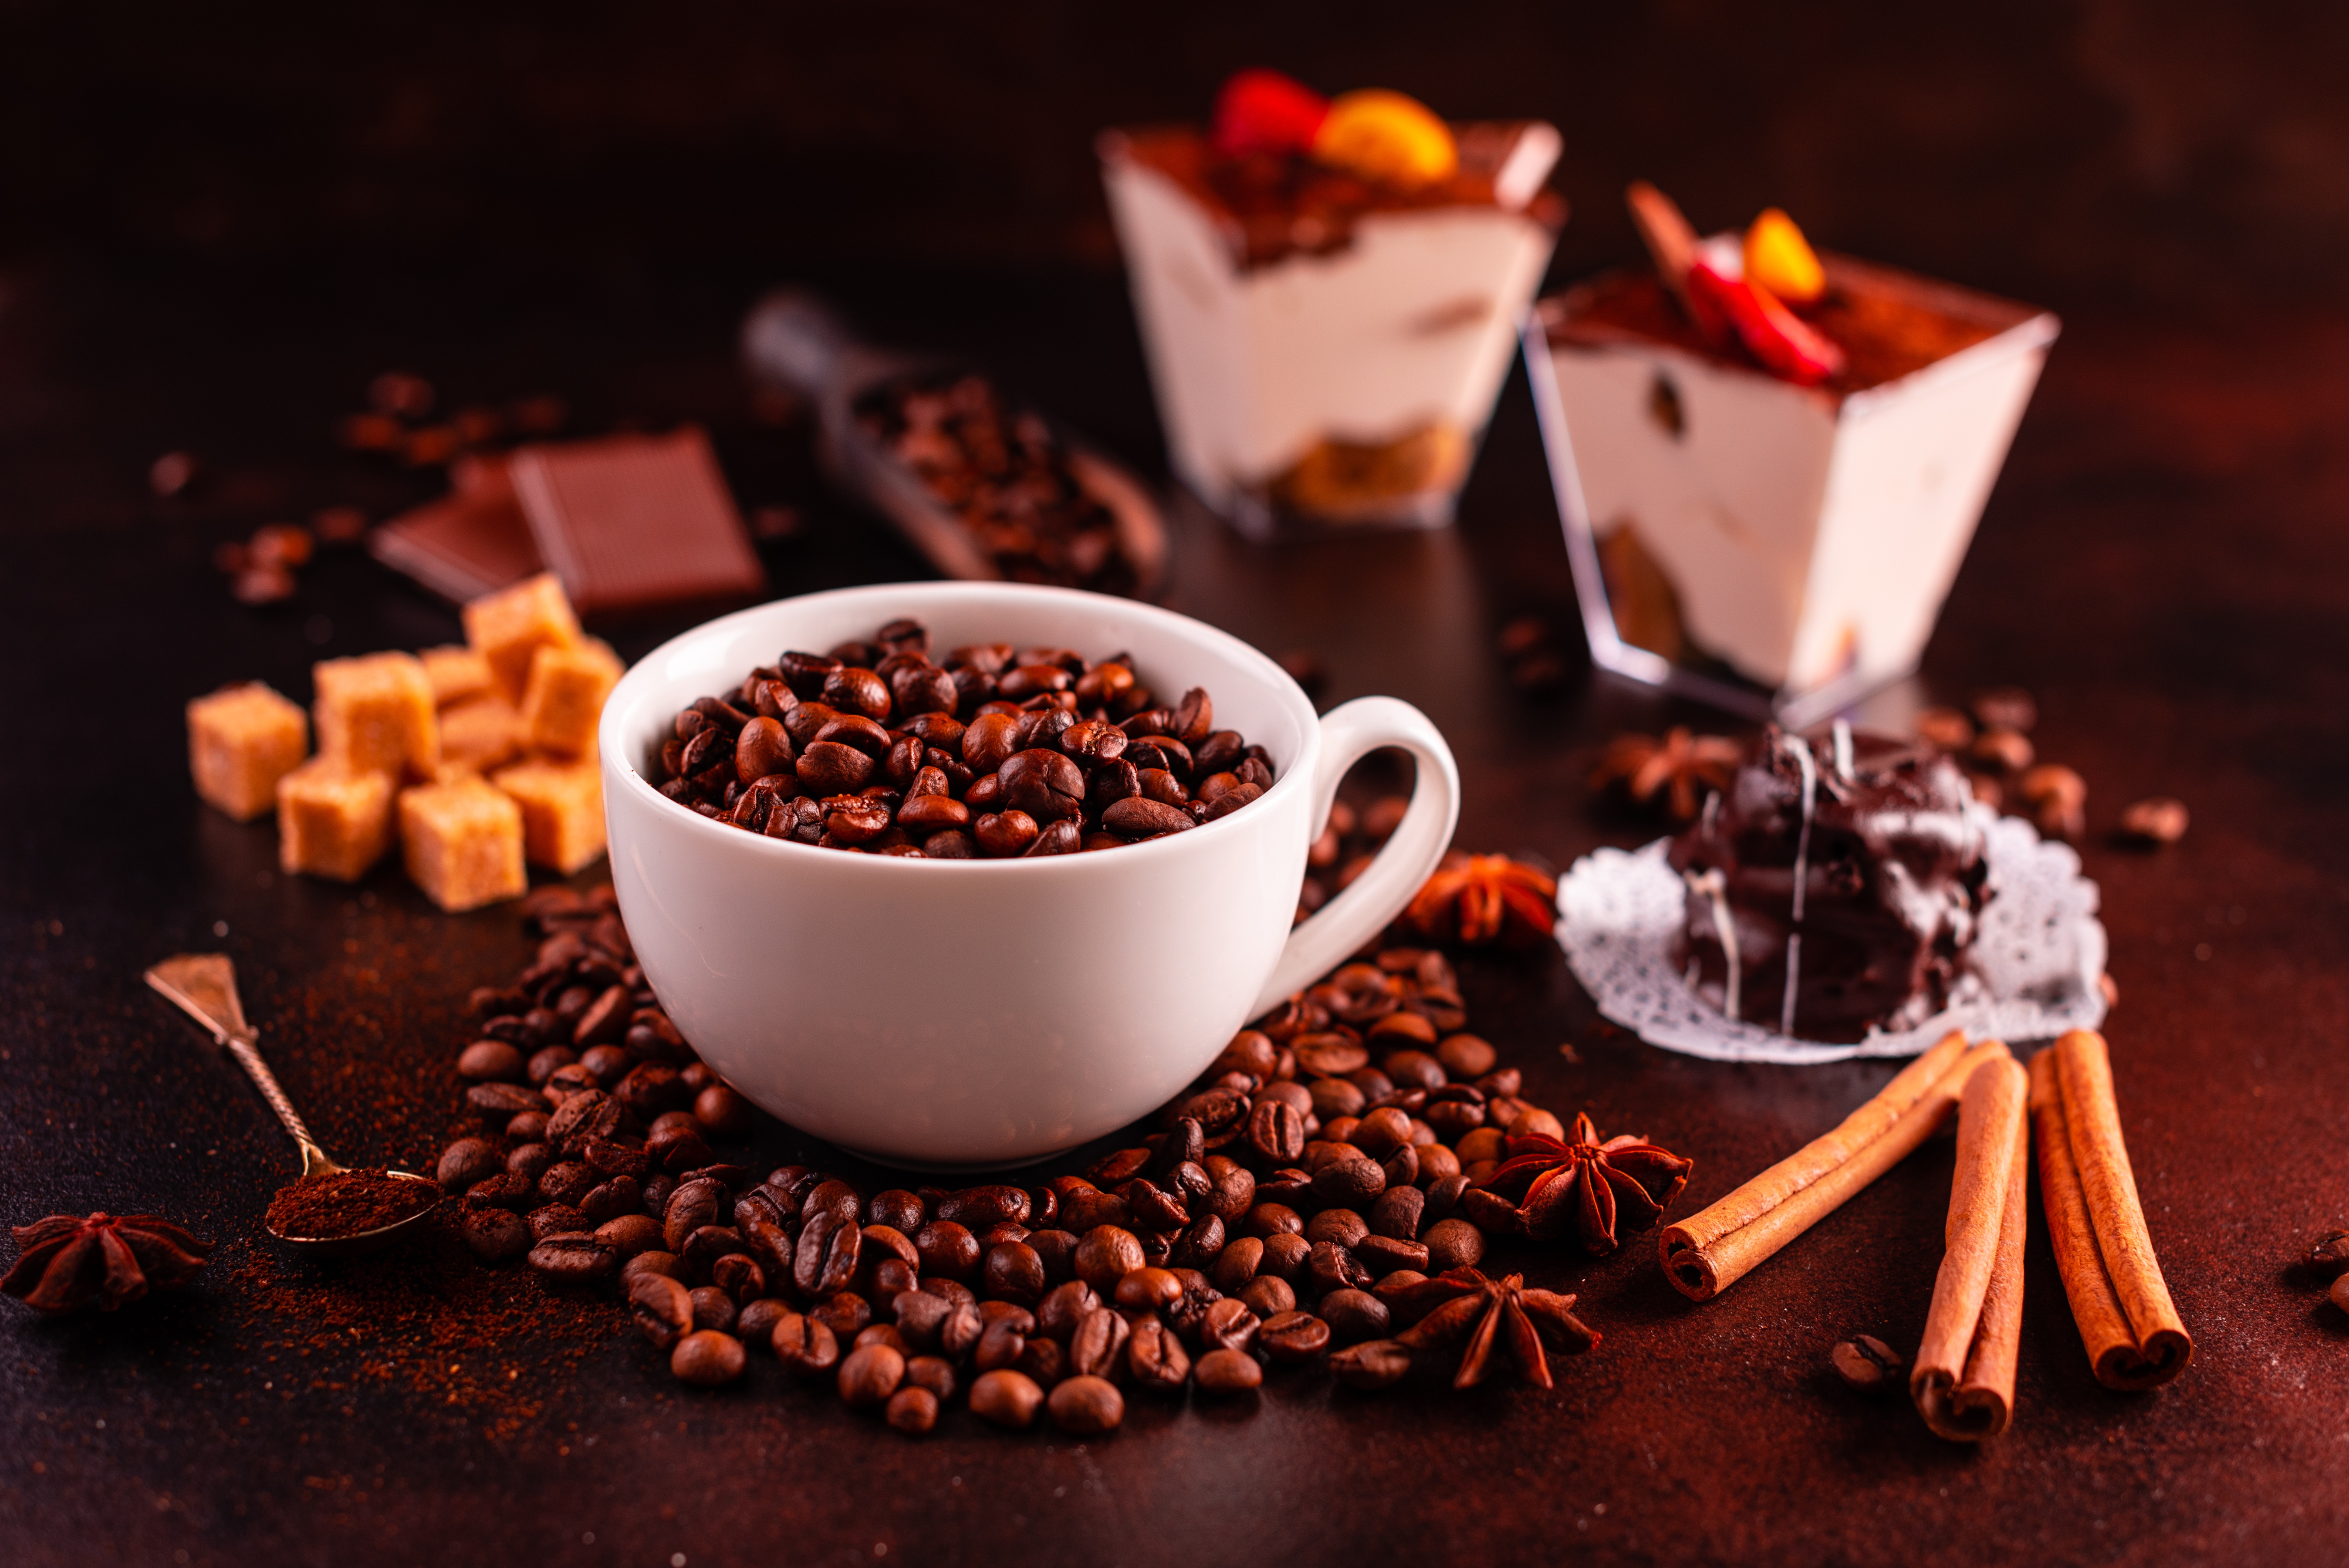 Фото с кофе. Кофе и шоколад. Кофе с конфетами. Кофе картинки. Красивый кофе.